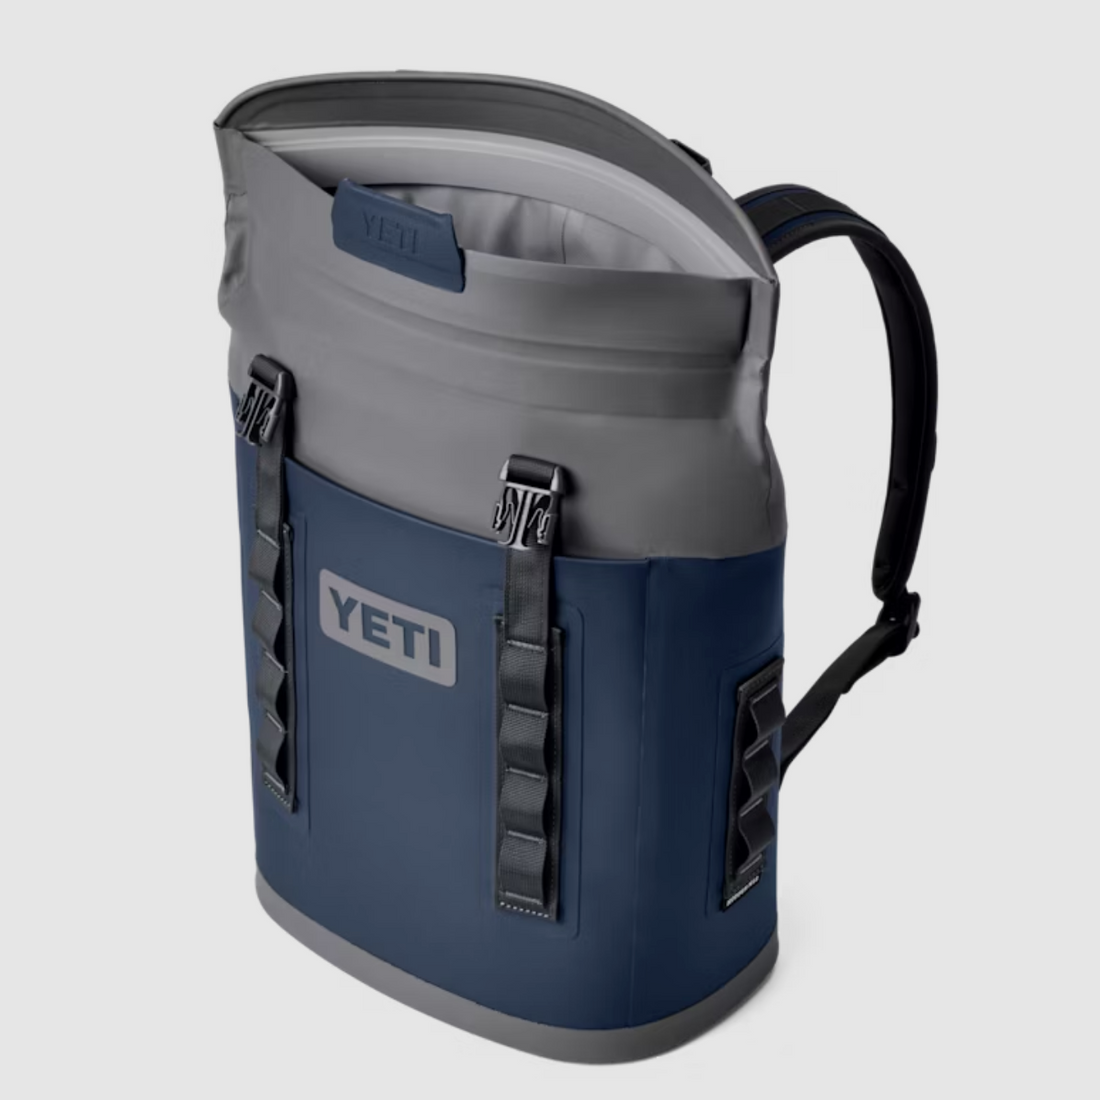 Soft Cooler - Hopper M12 Soft Backpack Cooler